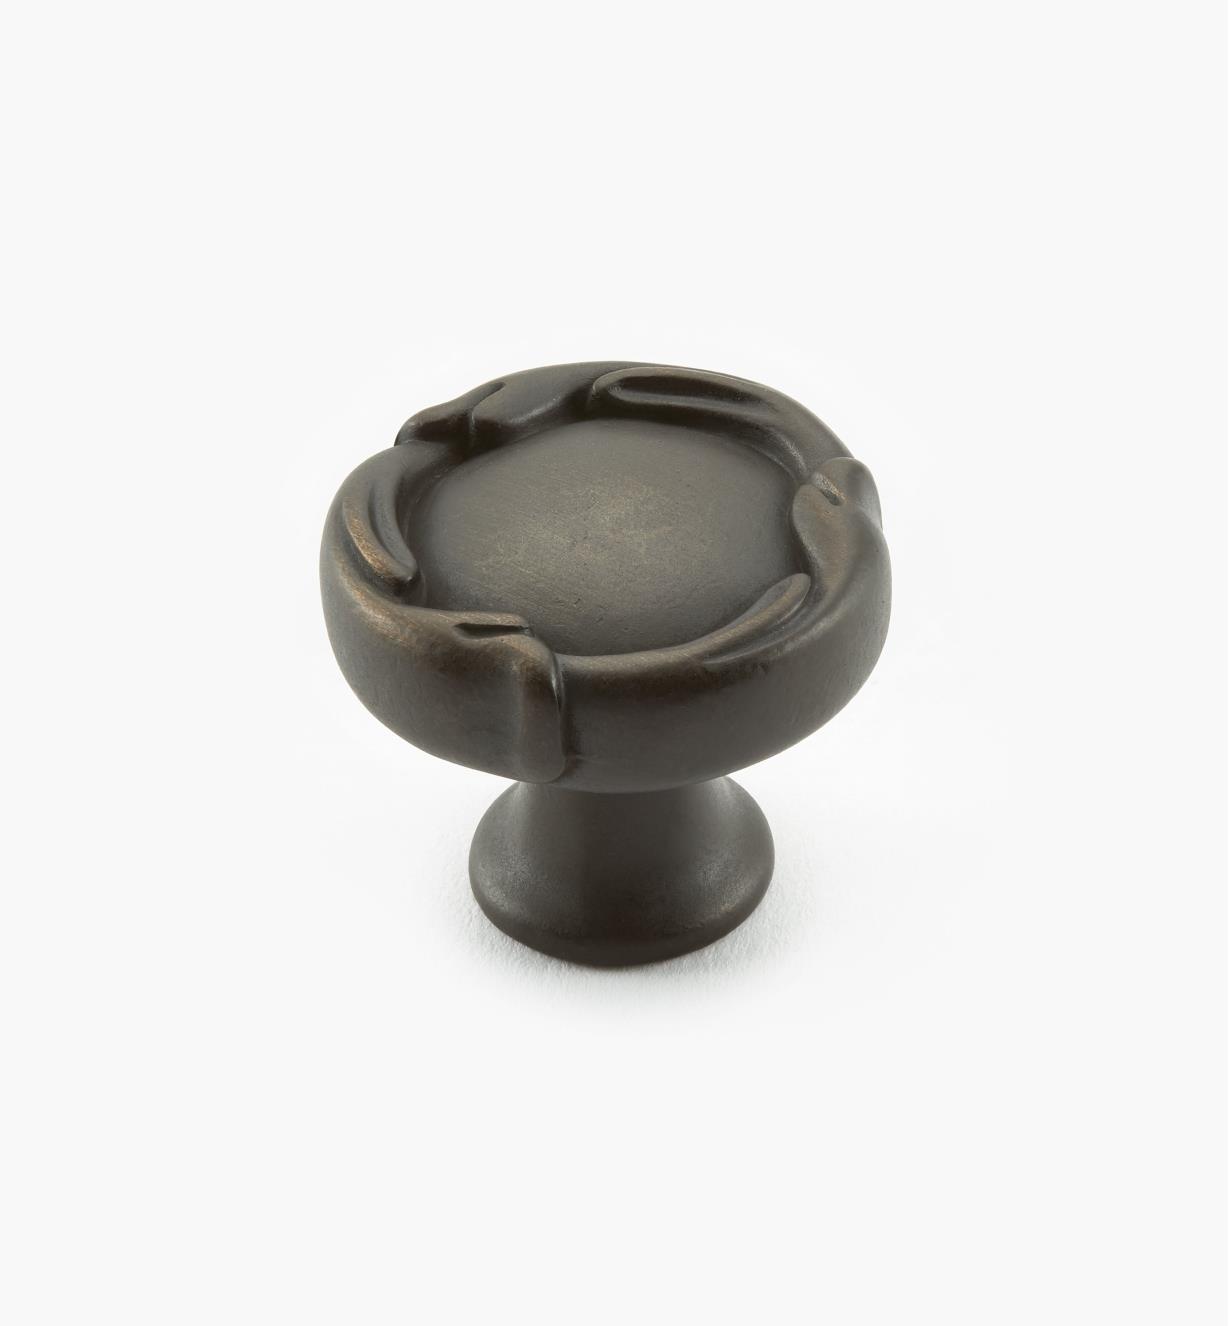 02A5250 - 1 1/4" x 1 1/8" Antique Bronze Round Knob